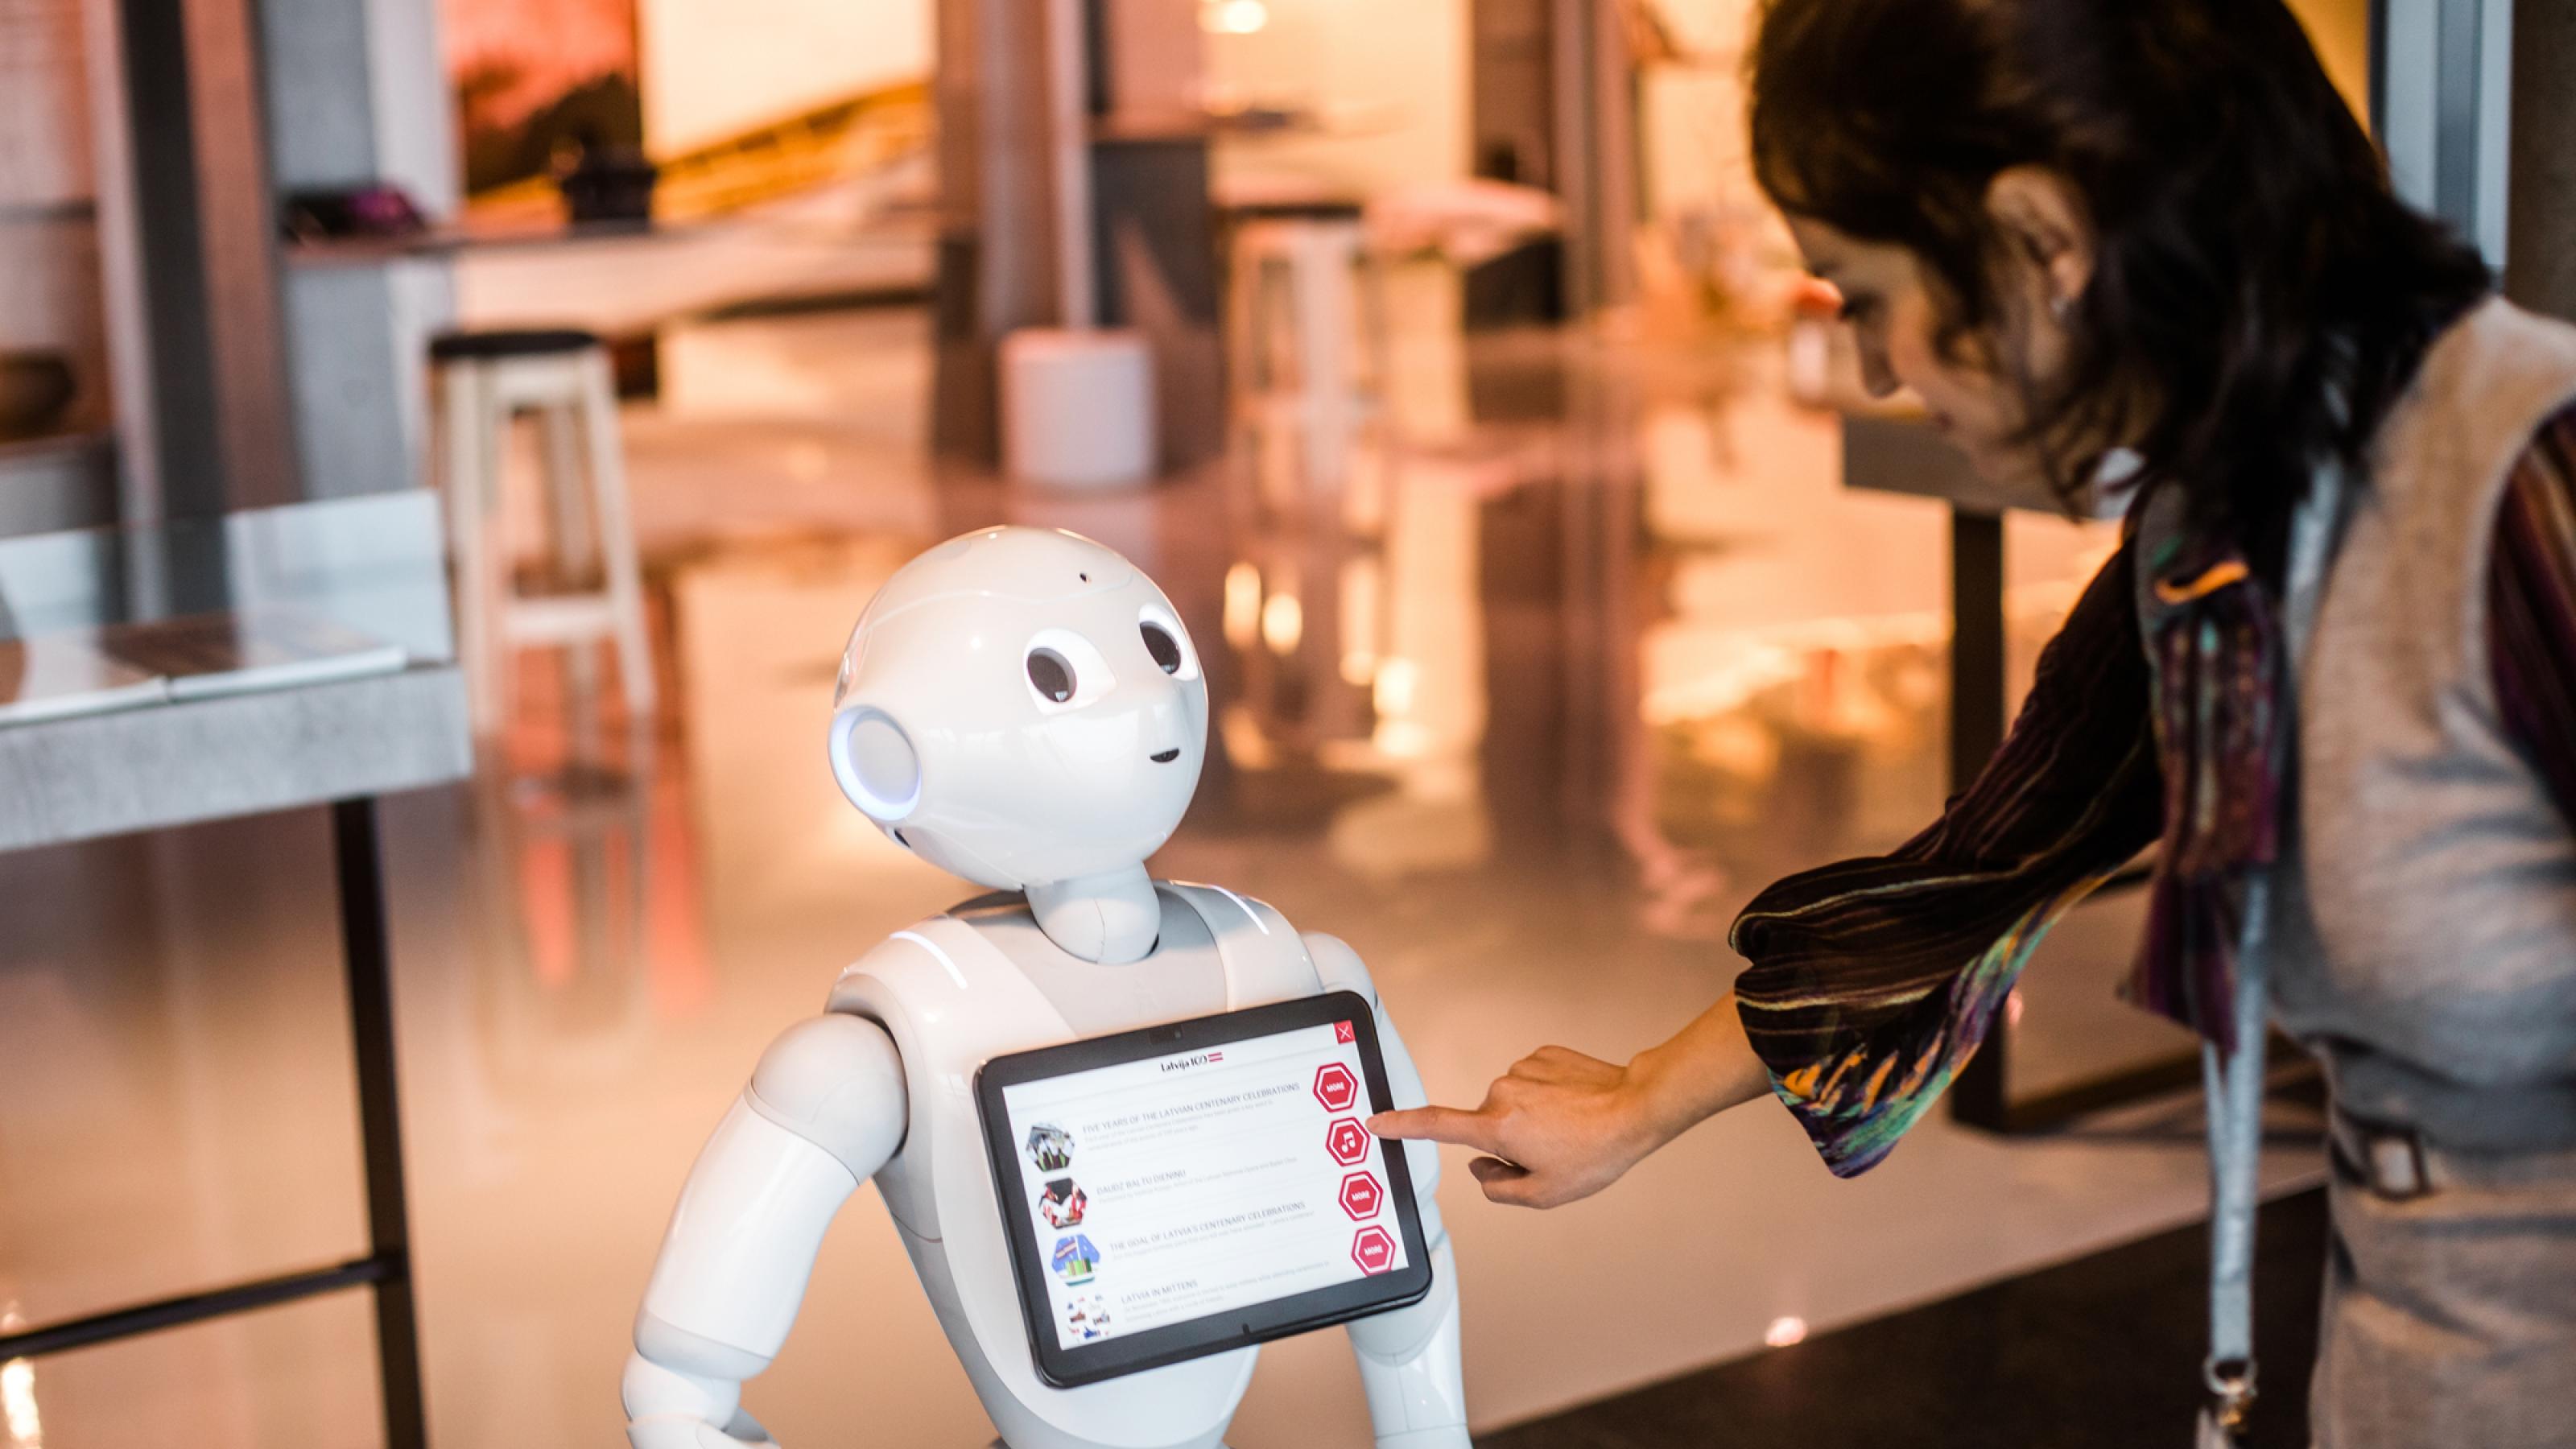 Ein Passagier erkundigt sich bei Roboter Pepper am Flughafen von Riga. Dank KI können Maschinen die Rolle eines sozialen Gegenübers übernehmen.